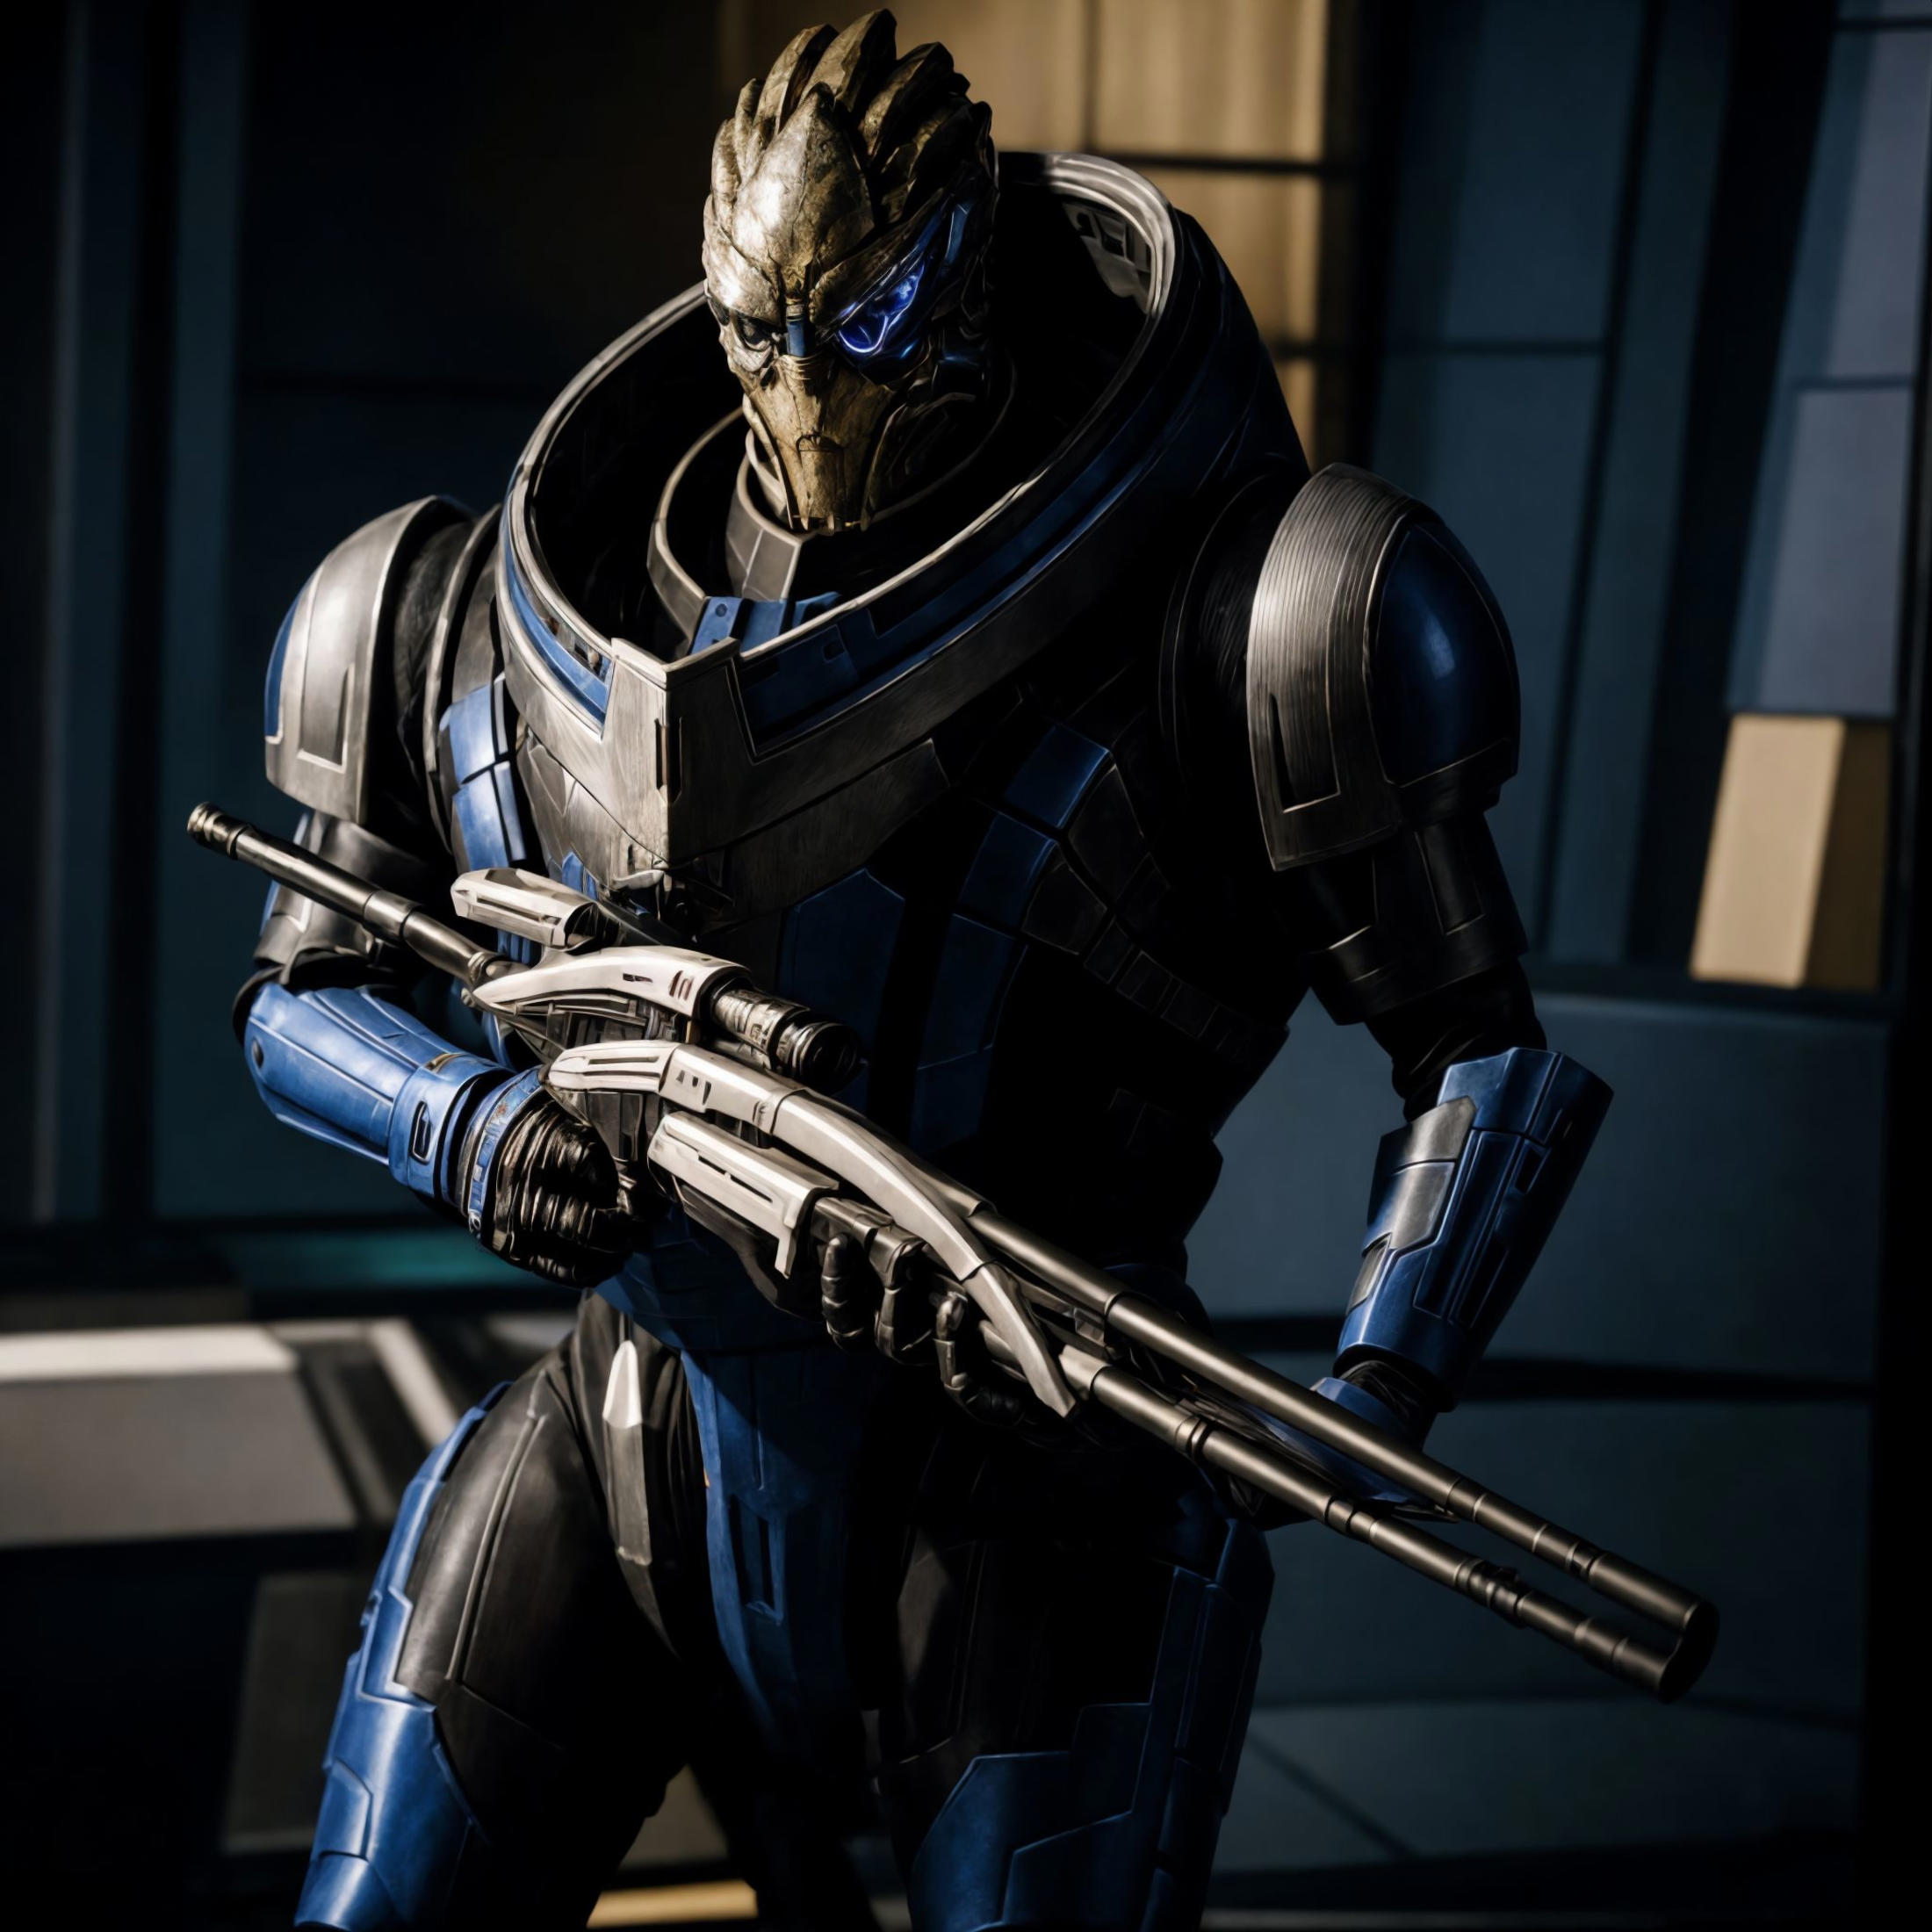 Garrus Vakarian (Mass Effect) LoRA image by J1B